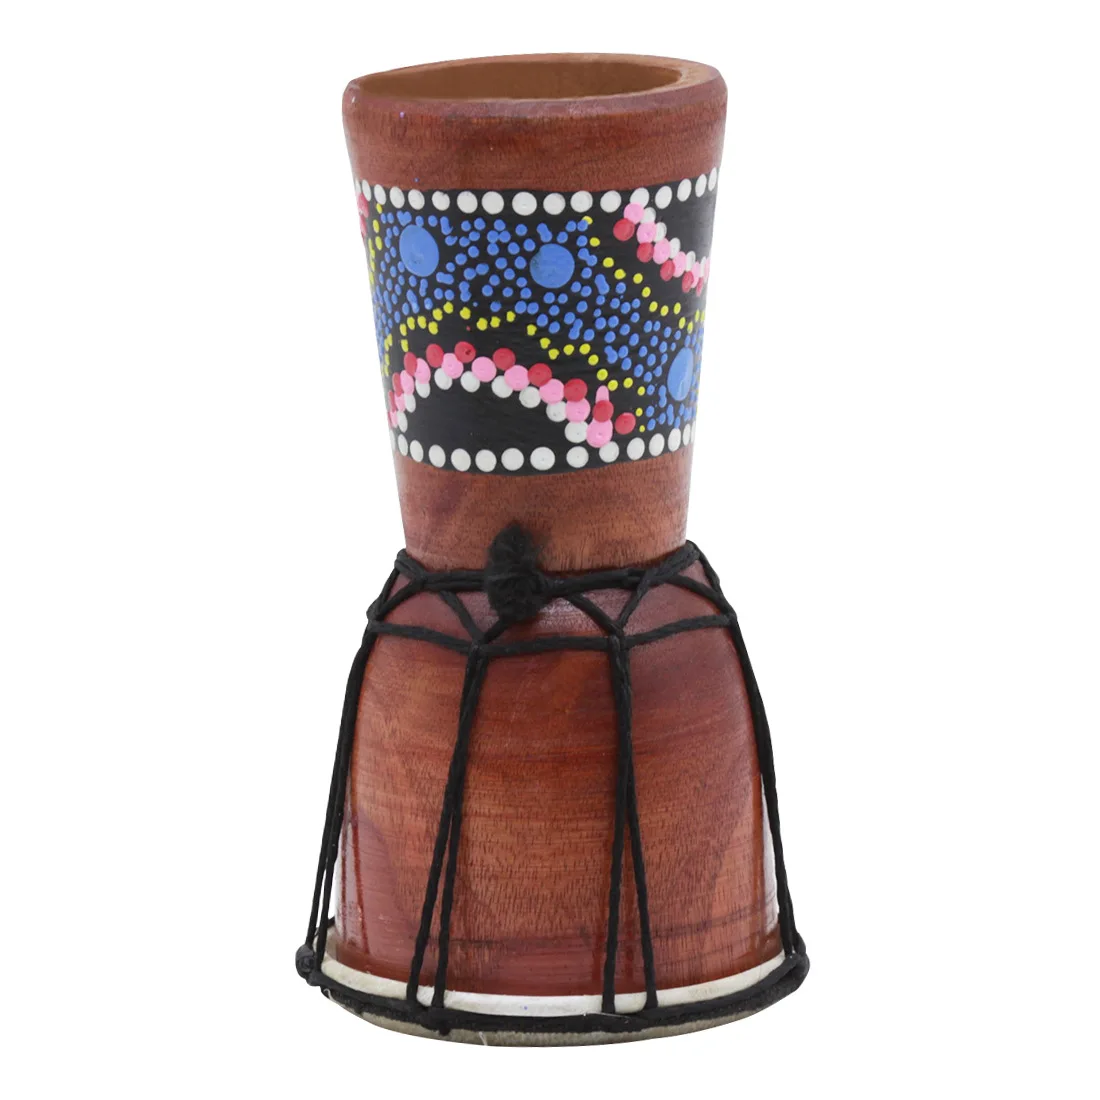 ИРИН 1 шт. 4 дюймов профессиональные джембе Африканский барабан Бонго дерево хороший звук музыкальный инструмент